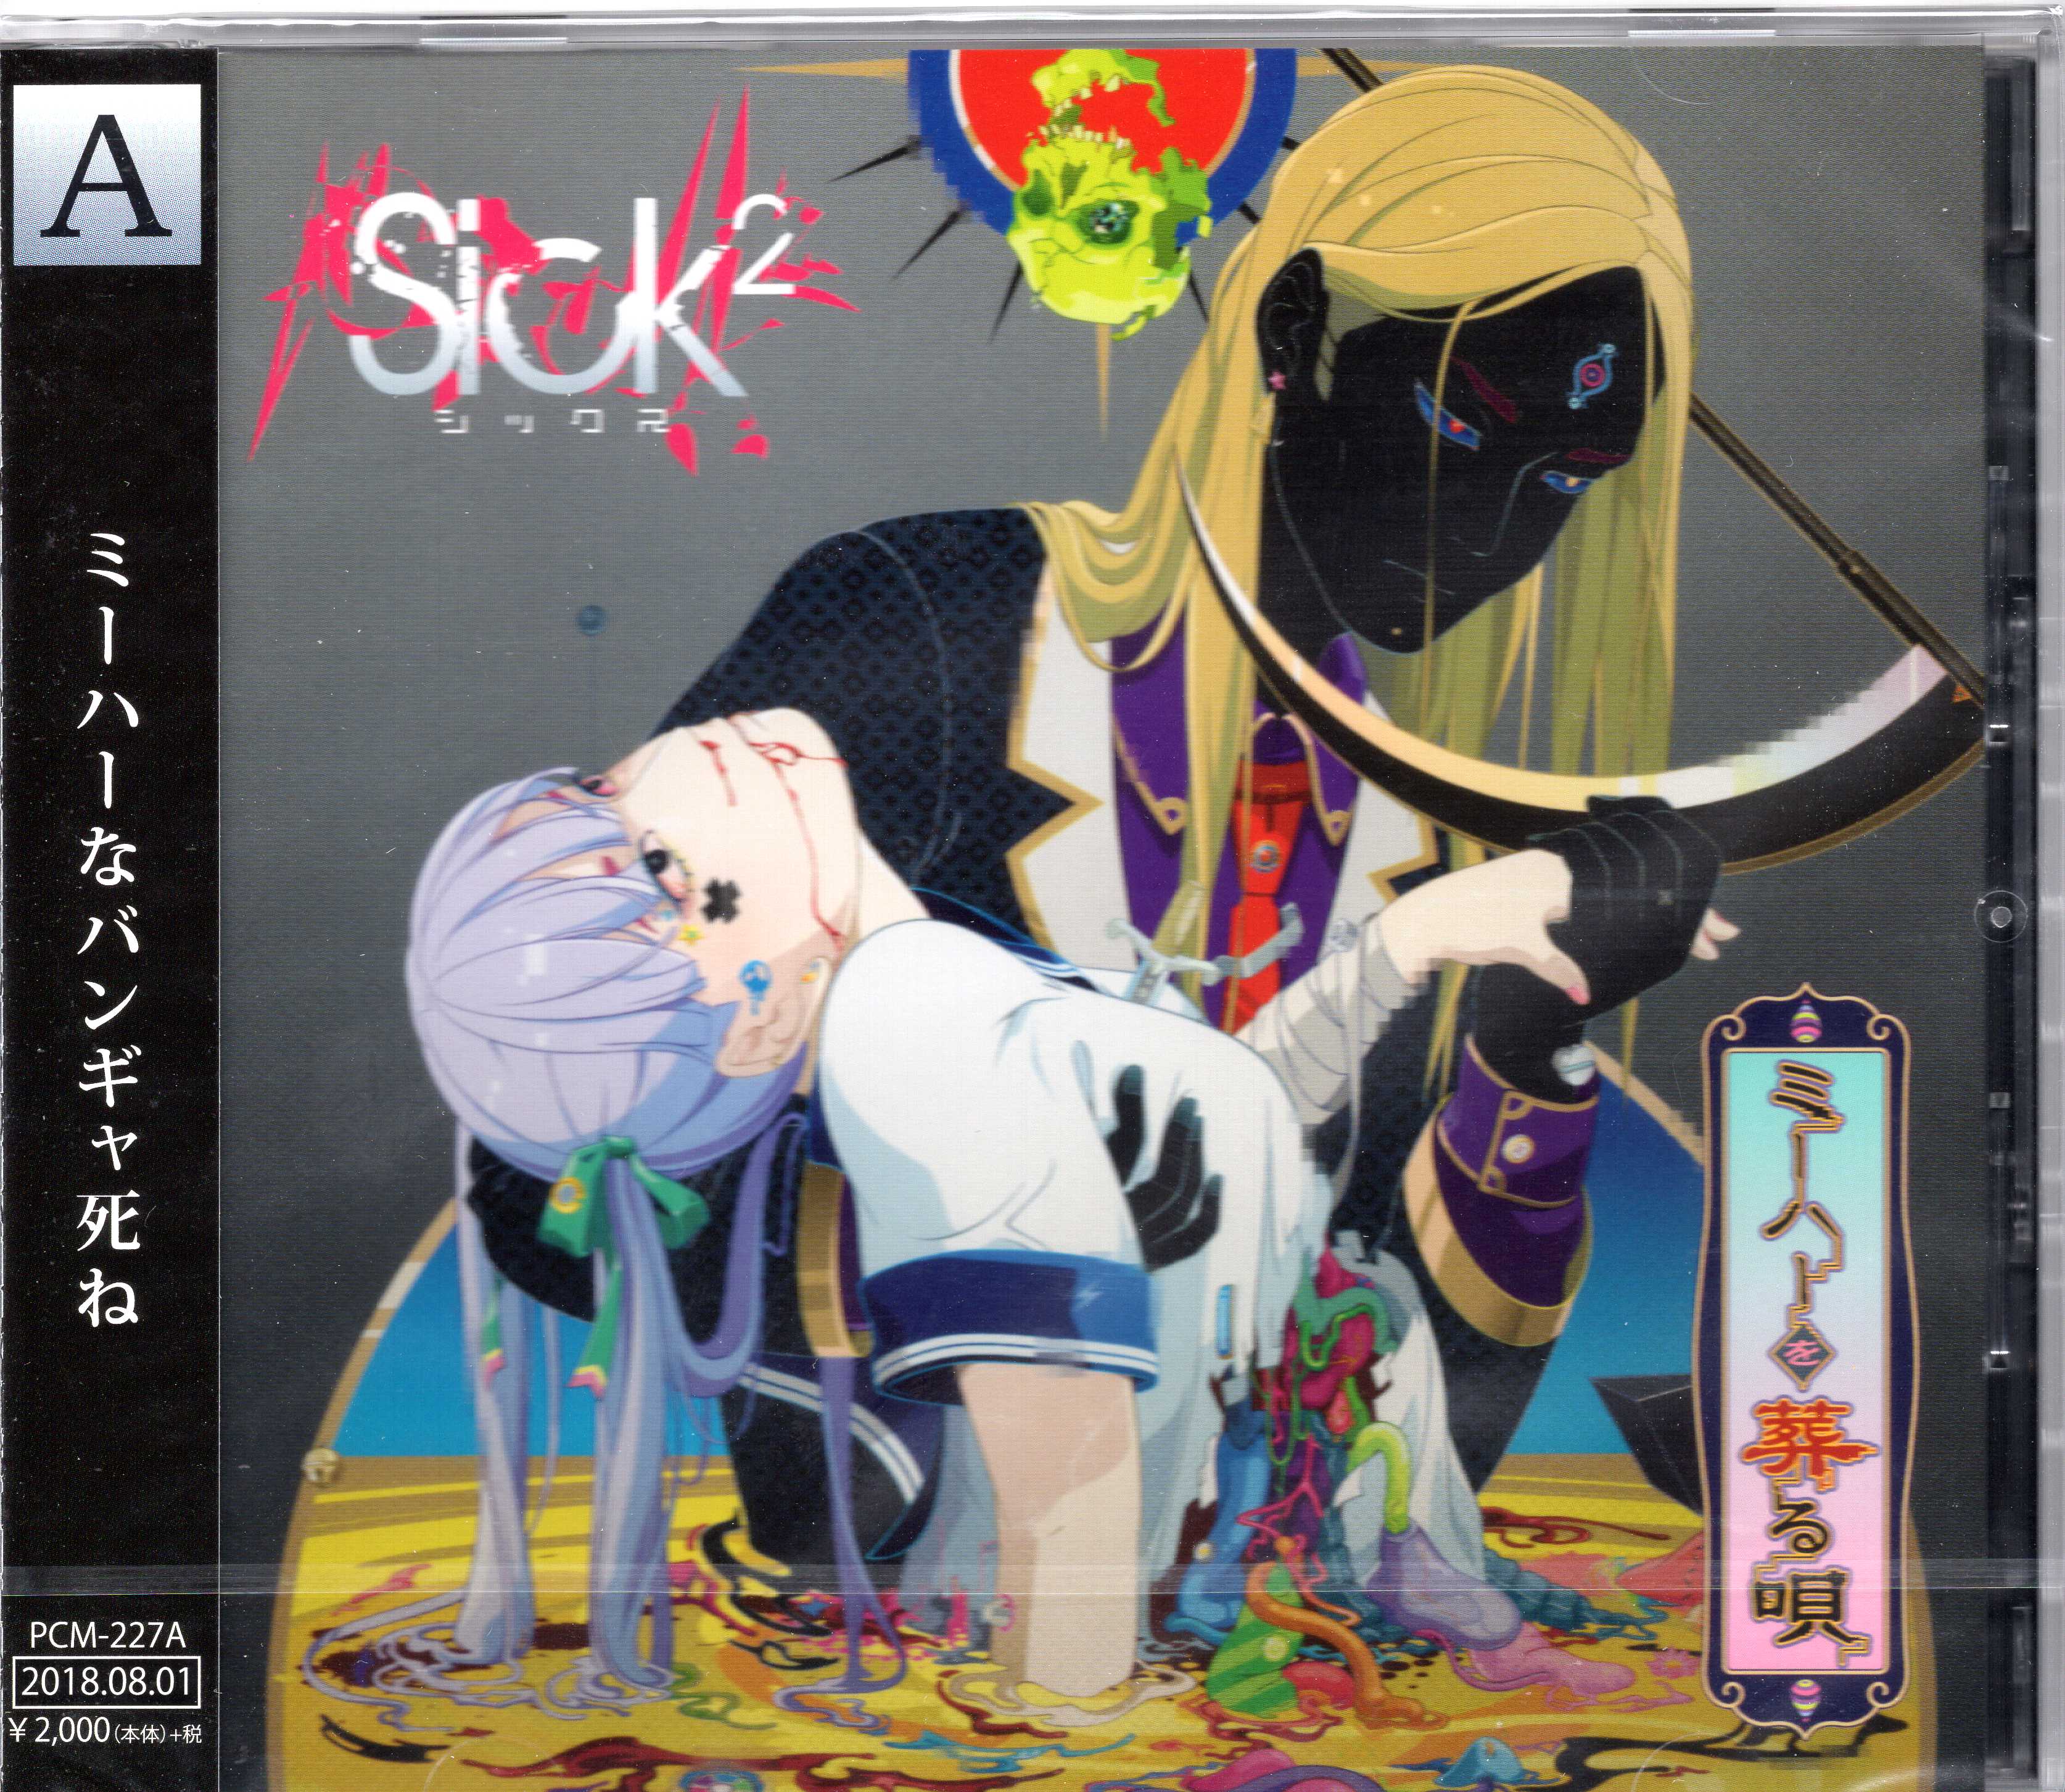 Sick2 ( シックス )  の CD 【Atype】ミーハーを葬る唄